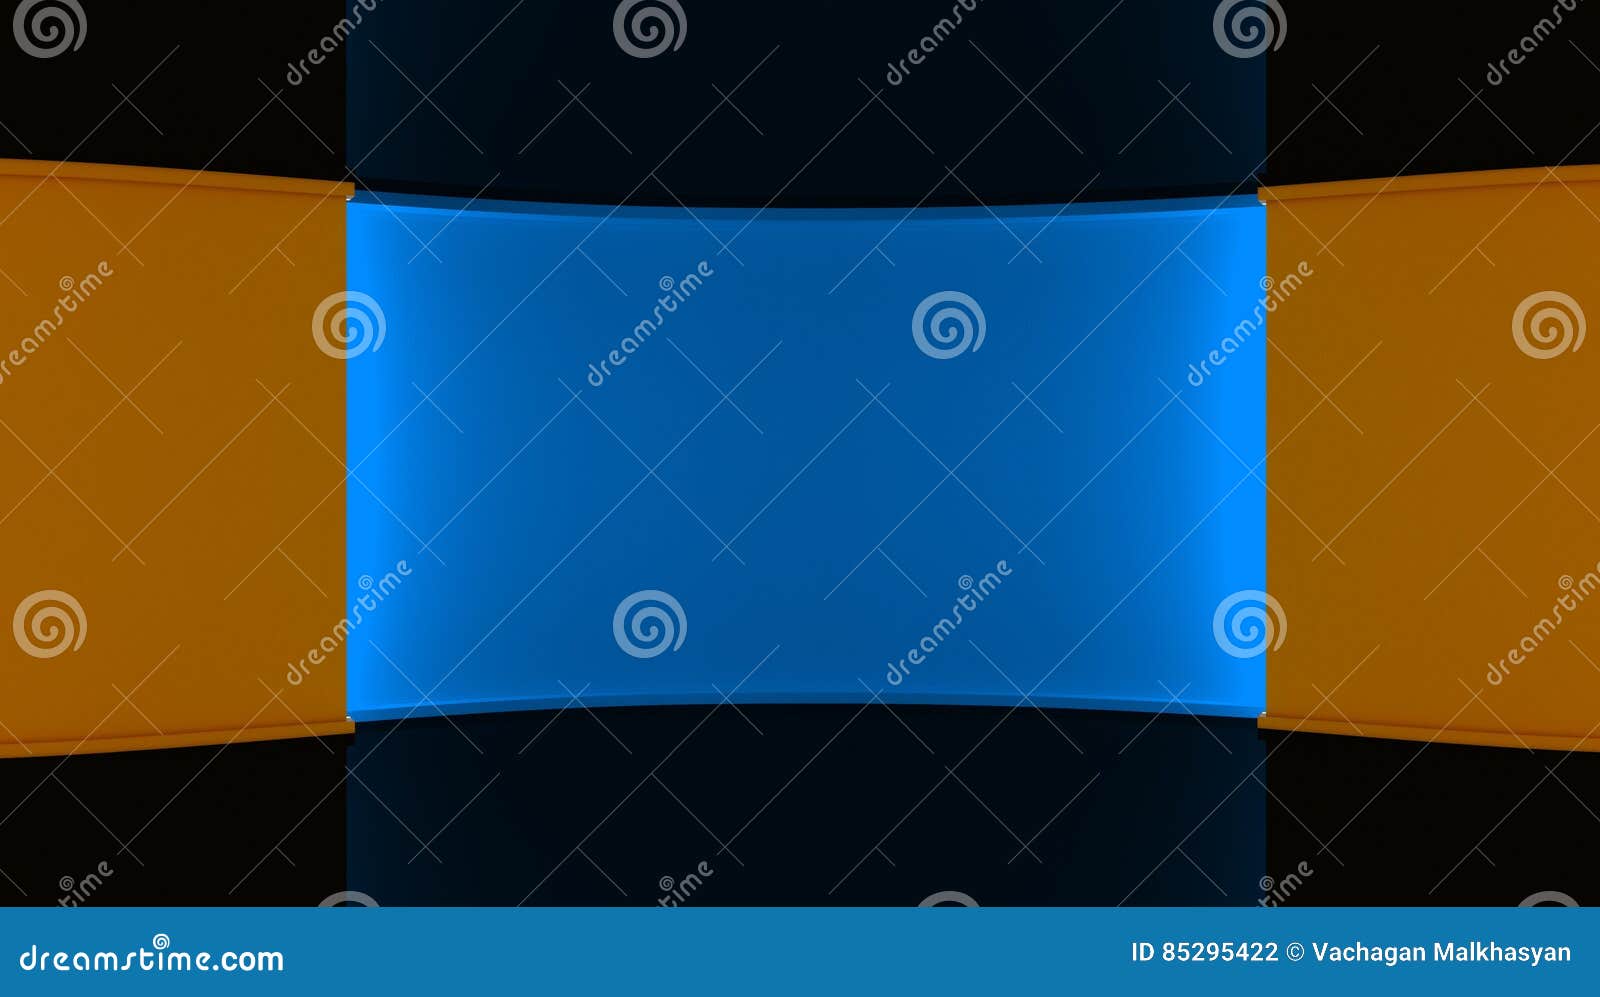 στούντιο Τέλειο σκηνικό για οποιαδήποτε πράσινη παραγωγή chromakey οθόνης ανασκόπηση που χρωματίζεται πορτοκαλής τοίχος μπλε τοίχ. στούντιο Τέλειο σκηνικό για οποιαδήποτε πράσινη παραγωγή chromakey οθόνης μπλε πορτοκάλι ανασκόπησ πορτοκαλής τοίχος μπλε τοίχος τρισδιάστατος τρισδιάστατη απόδοση